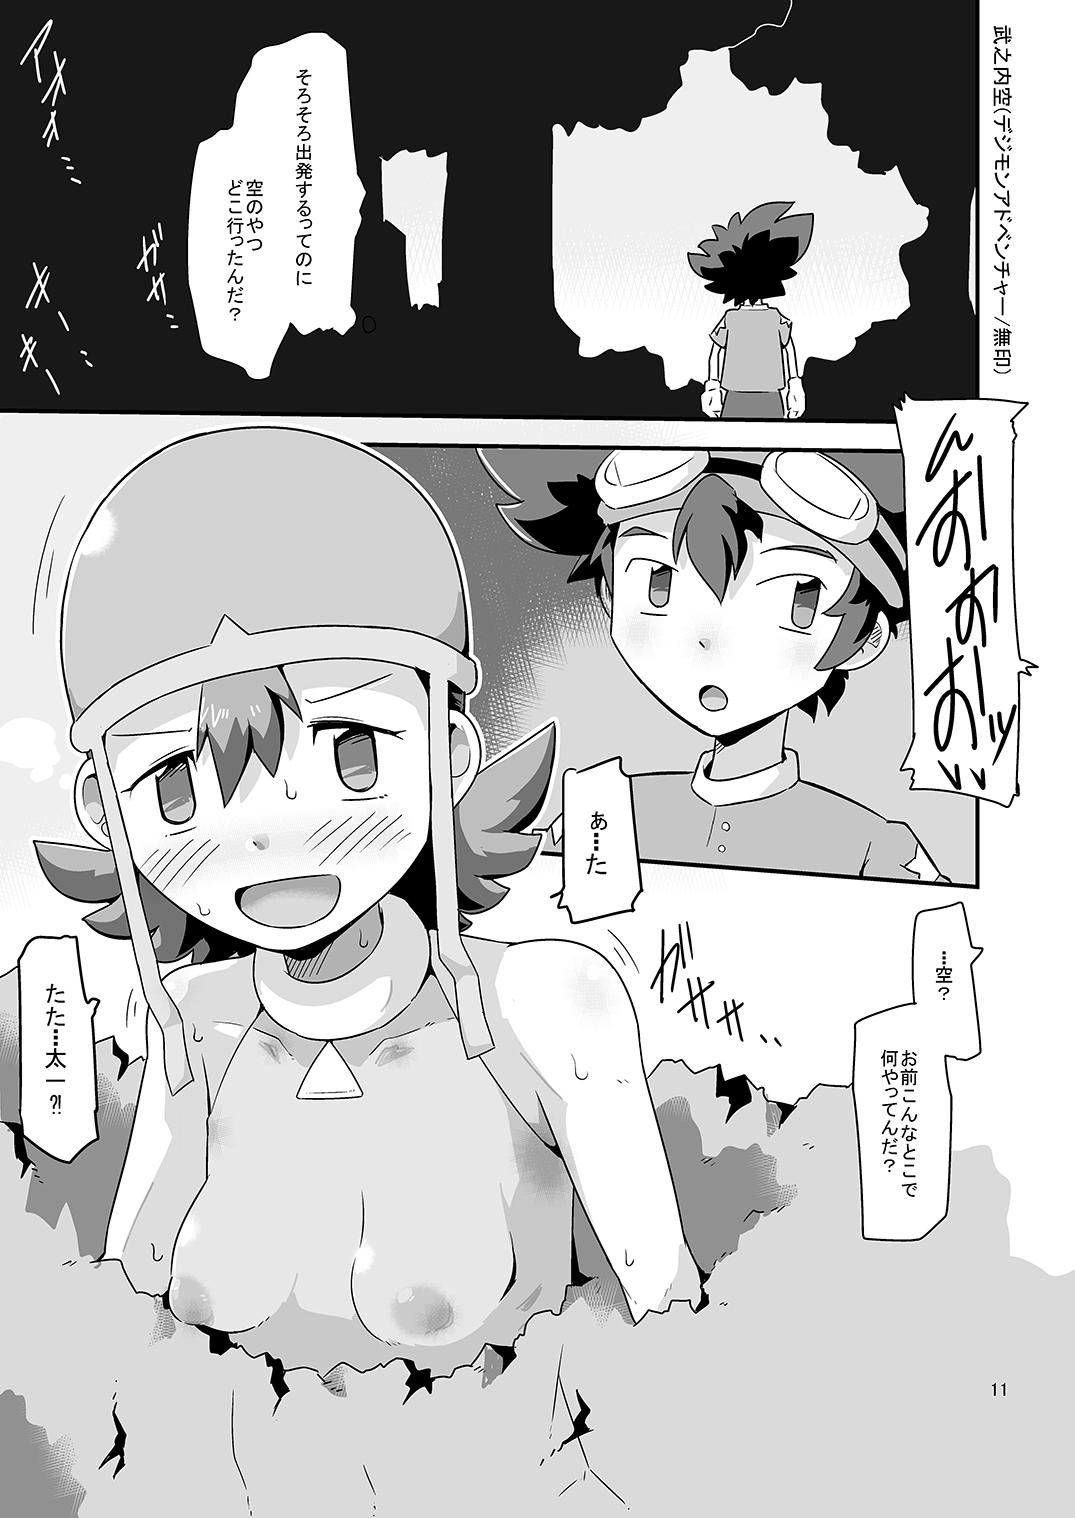 Lez Hardcore Gobli nanka ni Zettai Makenai mon: - Digimon Hd Porn - Page 12